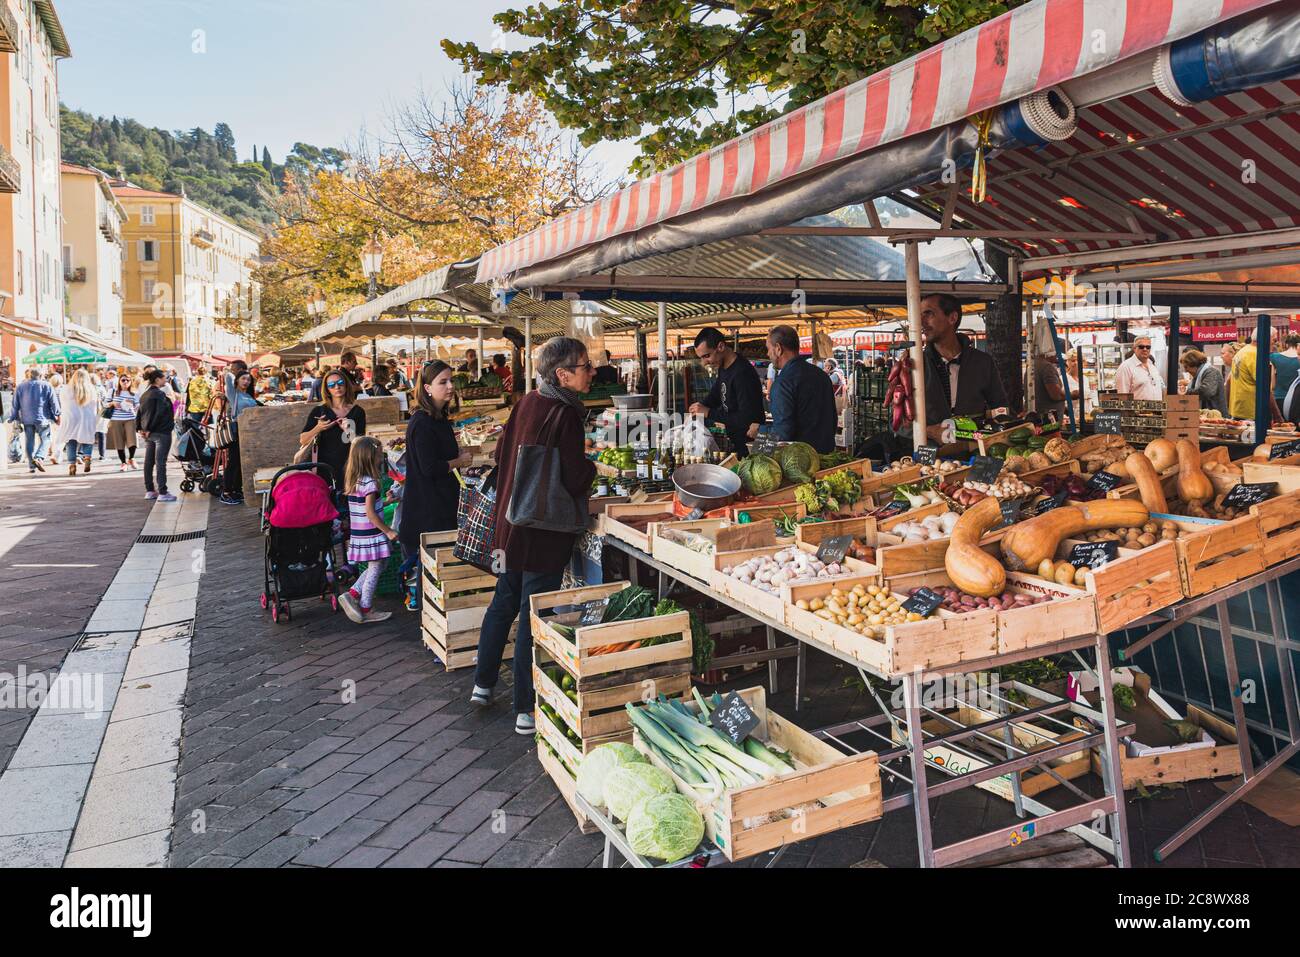 Die berühmte Marche Aux Fleurs Cours Saleya in Place Charles Felix. Frisches Obst und Gemüse liegen auf den historischen Marktständen - Nizza, Frankreich Stockfoto